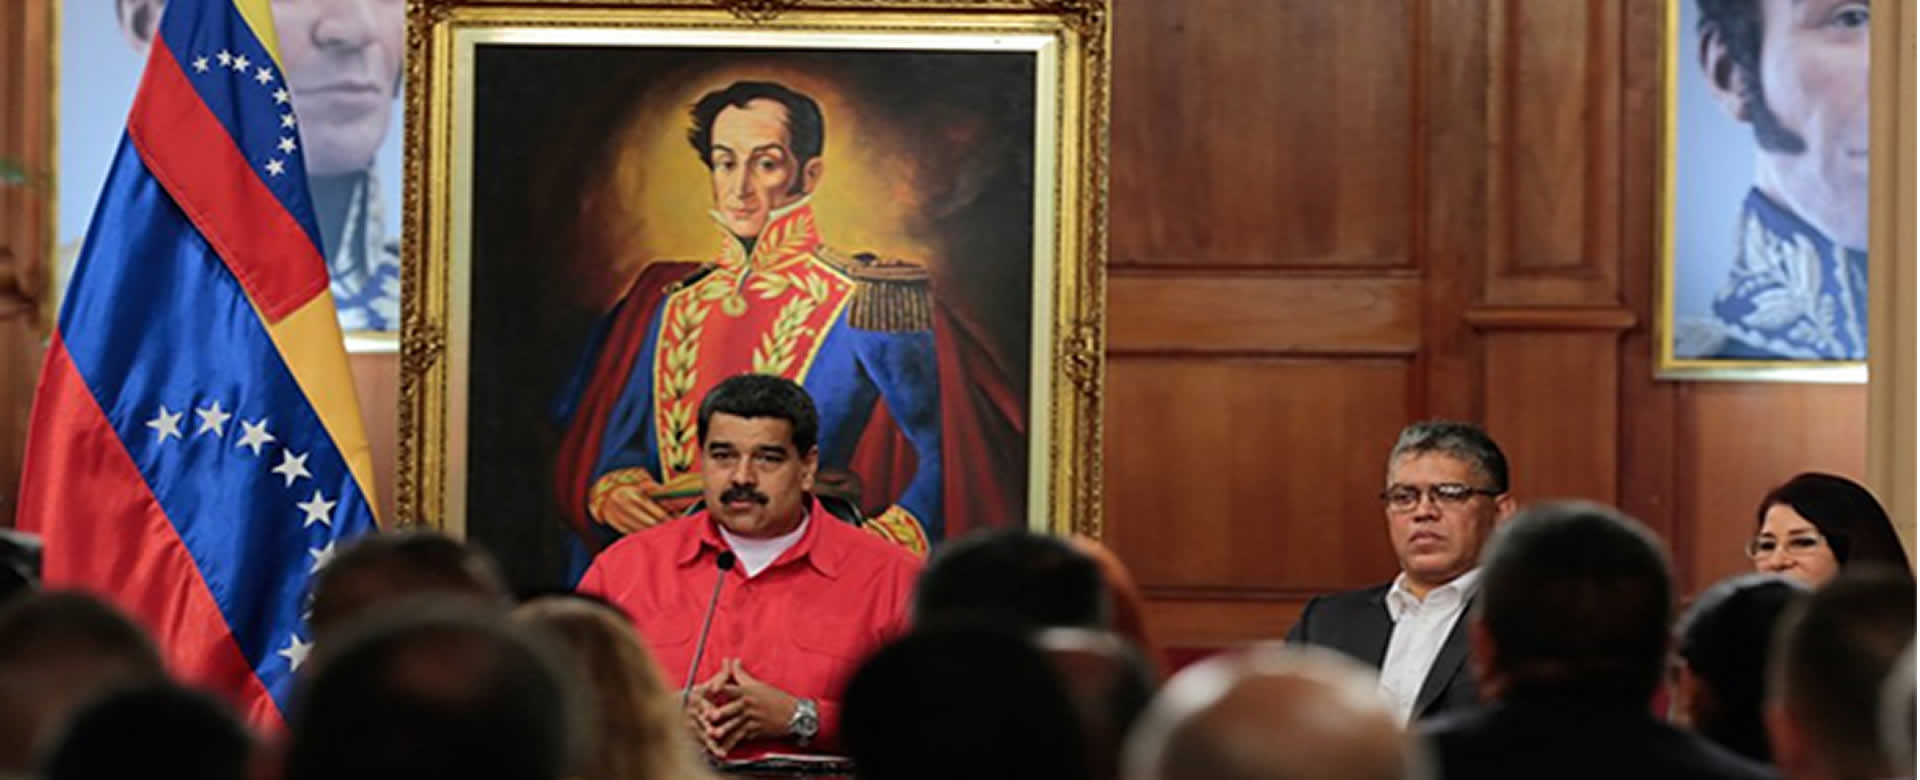 Venezolanos ratificaron sus ideales a pesar de la presión Norteamérica